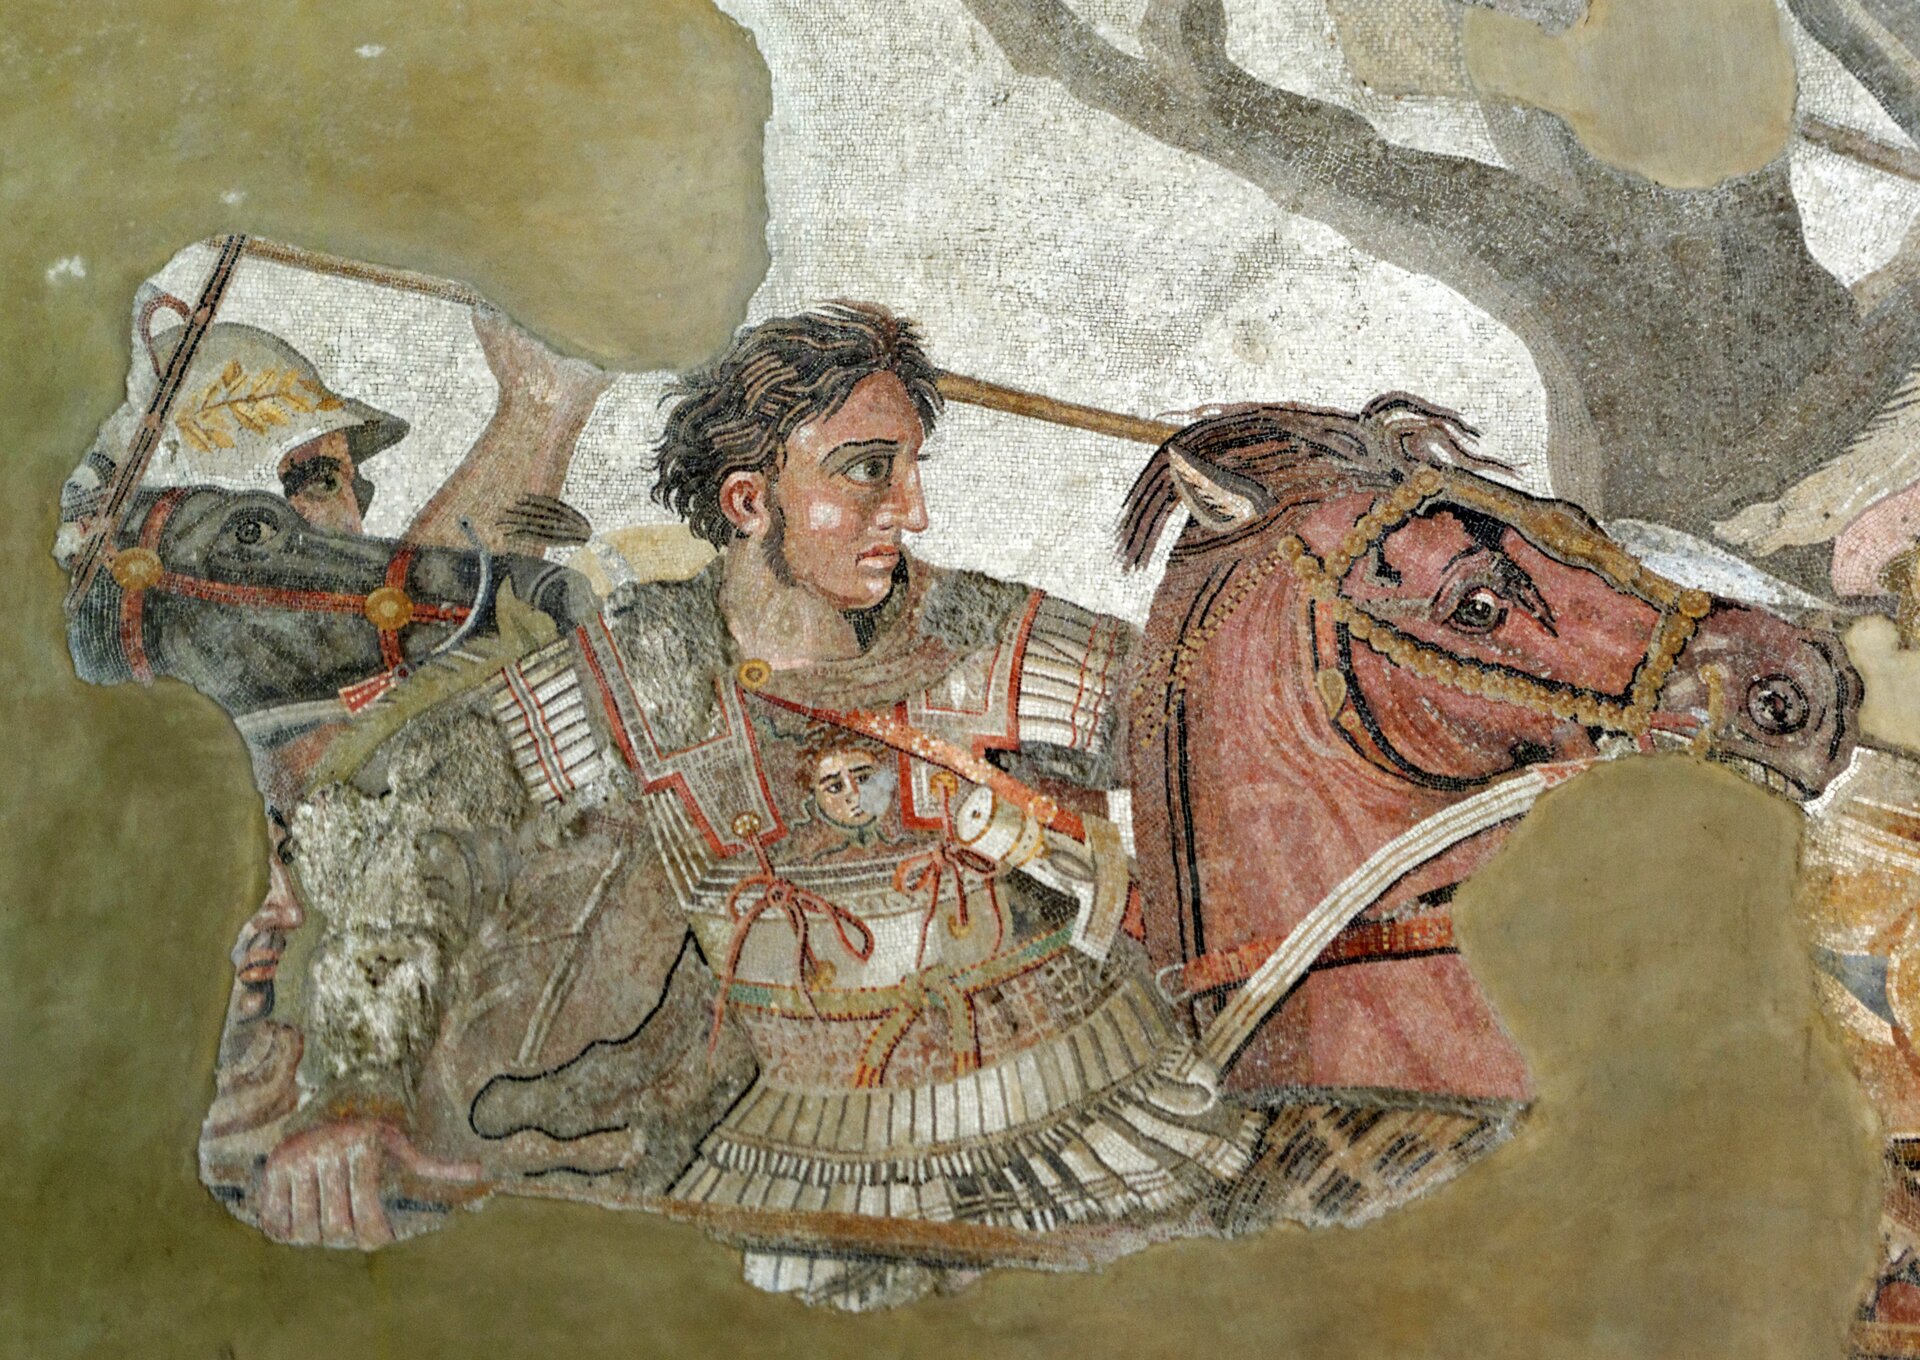 Ilustracja przedstawia mozaikę znajdującą się w Narodowym Muzeum Archeologicznym w Neapolu. Mozaika ukazuje Aleksandra na Bucefale podczas bitwy w Issos. Poza Aleksandrem na fragmencie mozaiki widoczna jest inna postać na czarnym koniu.